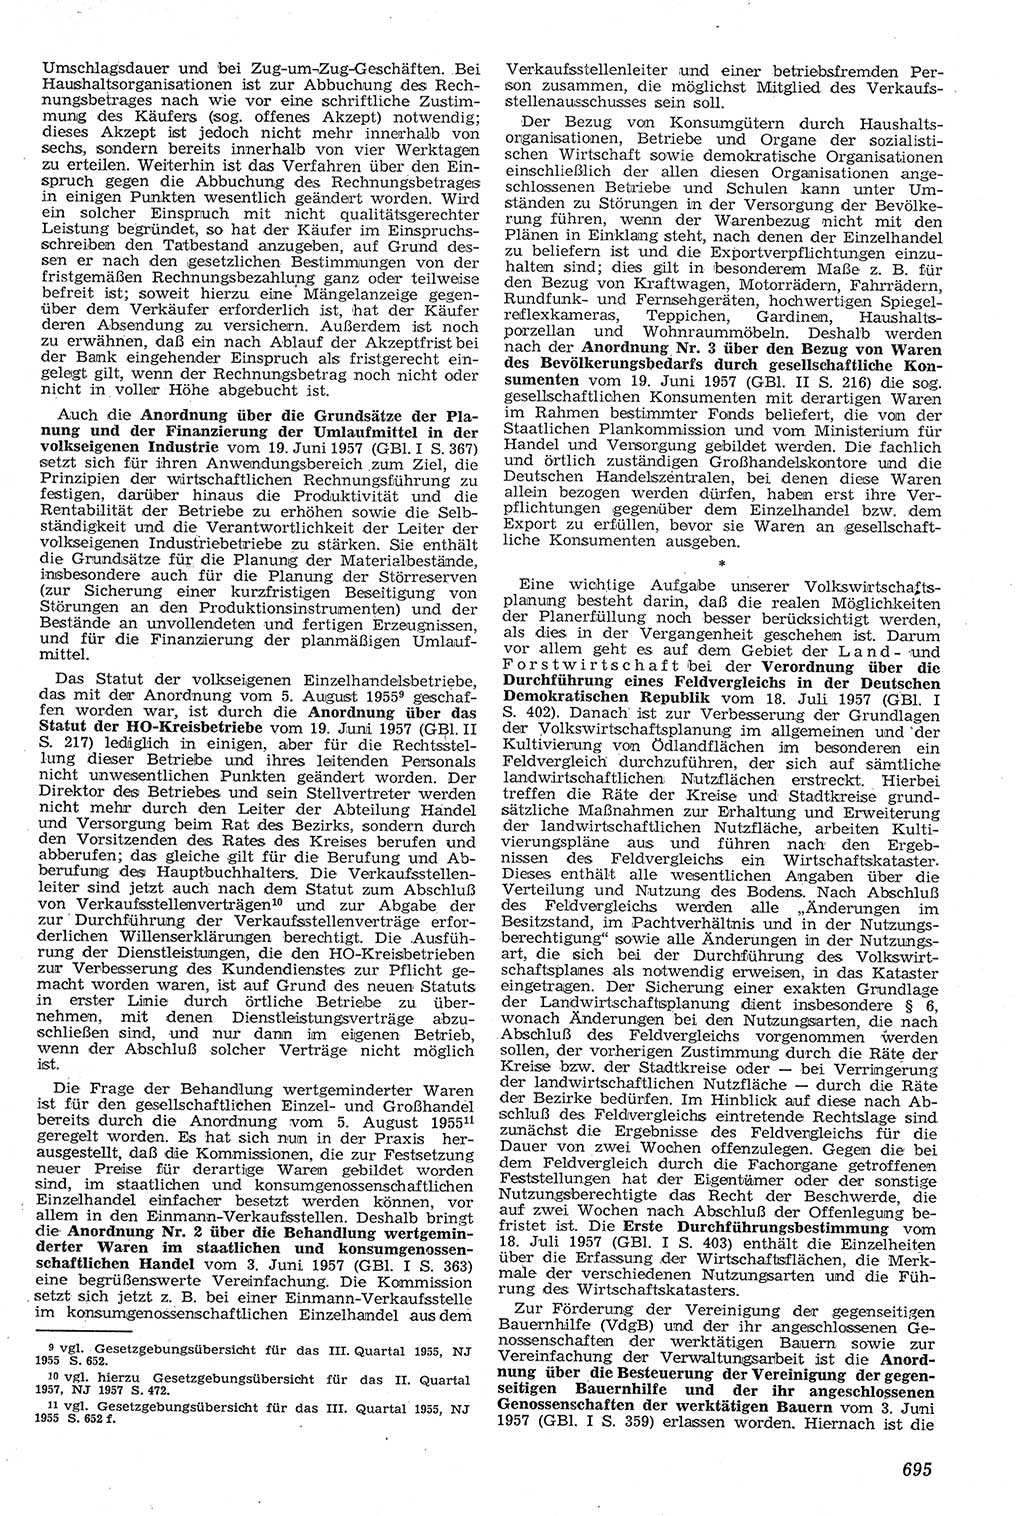 Neue Justiz (NJ), Zeitschrift für Recht und Rechtswissenschaft [Deutsche Demokratische Republik (DDR)], 11. Jahrgang 1957, Seite 695 (NJ DDR 1957, S. 695)